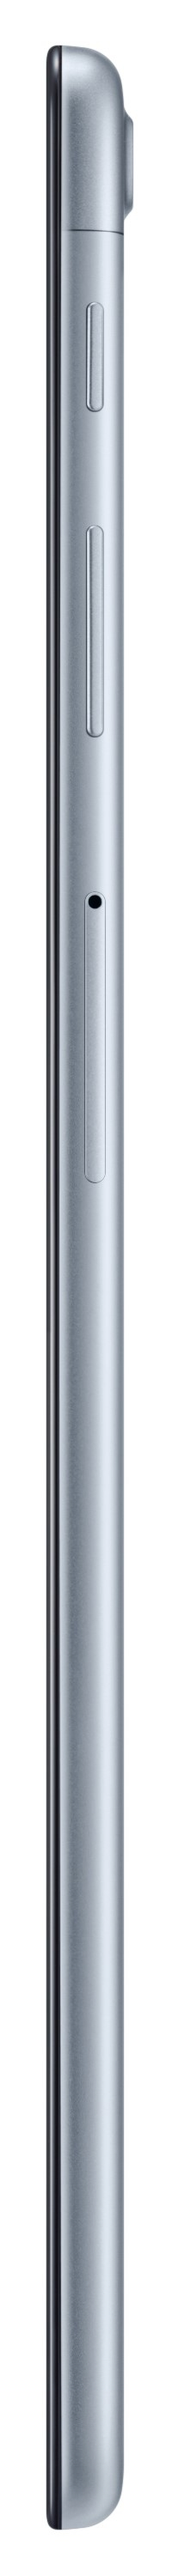 Samsung Galaxy Tab A 10.1-inch 32GB/4G Tablet - Silver